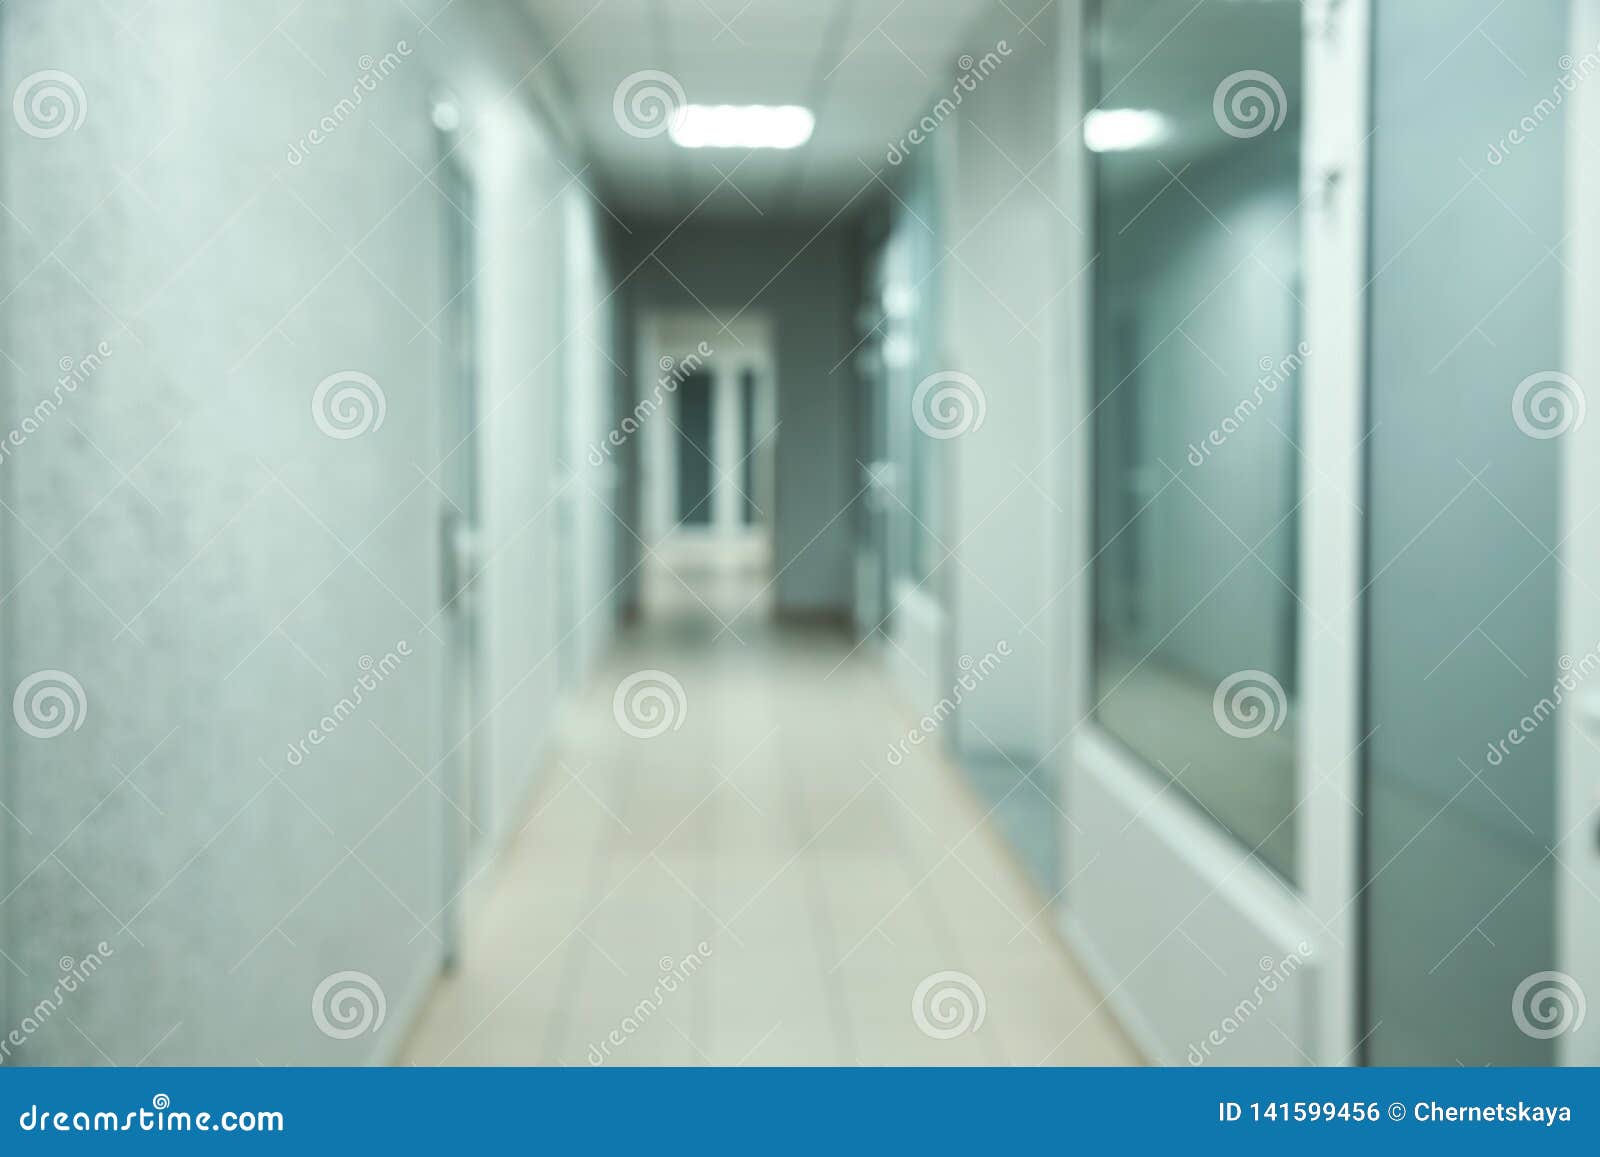 Unscharfe Ansicht des leeren Korridors im modernen Krankenhaus